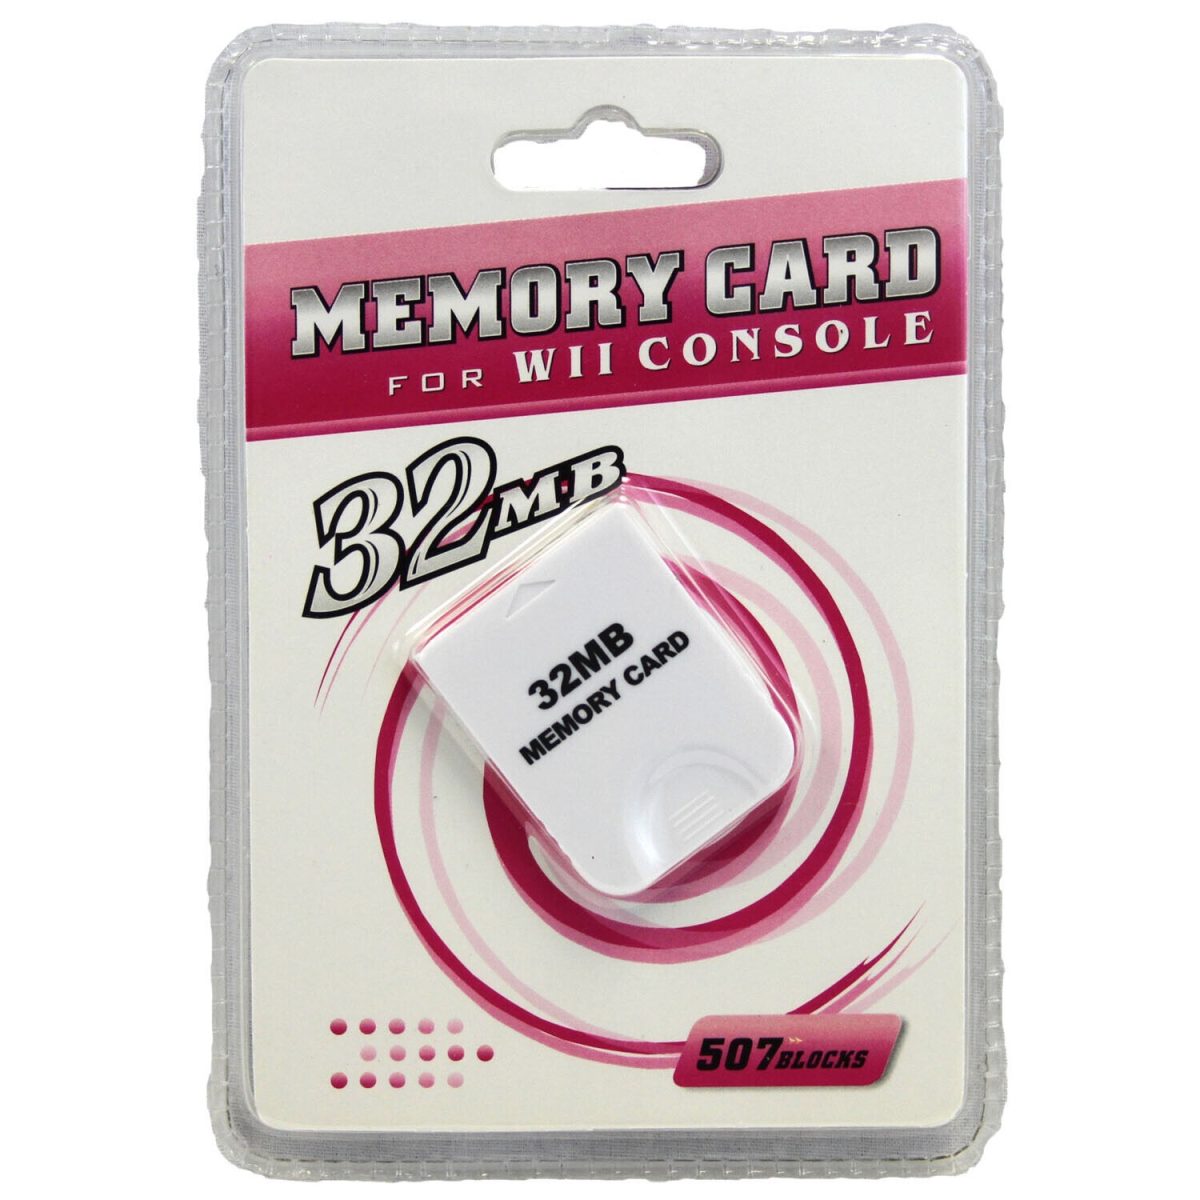 Cartão de Memória de 32MB